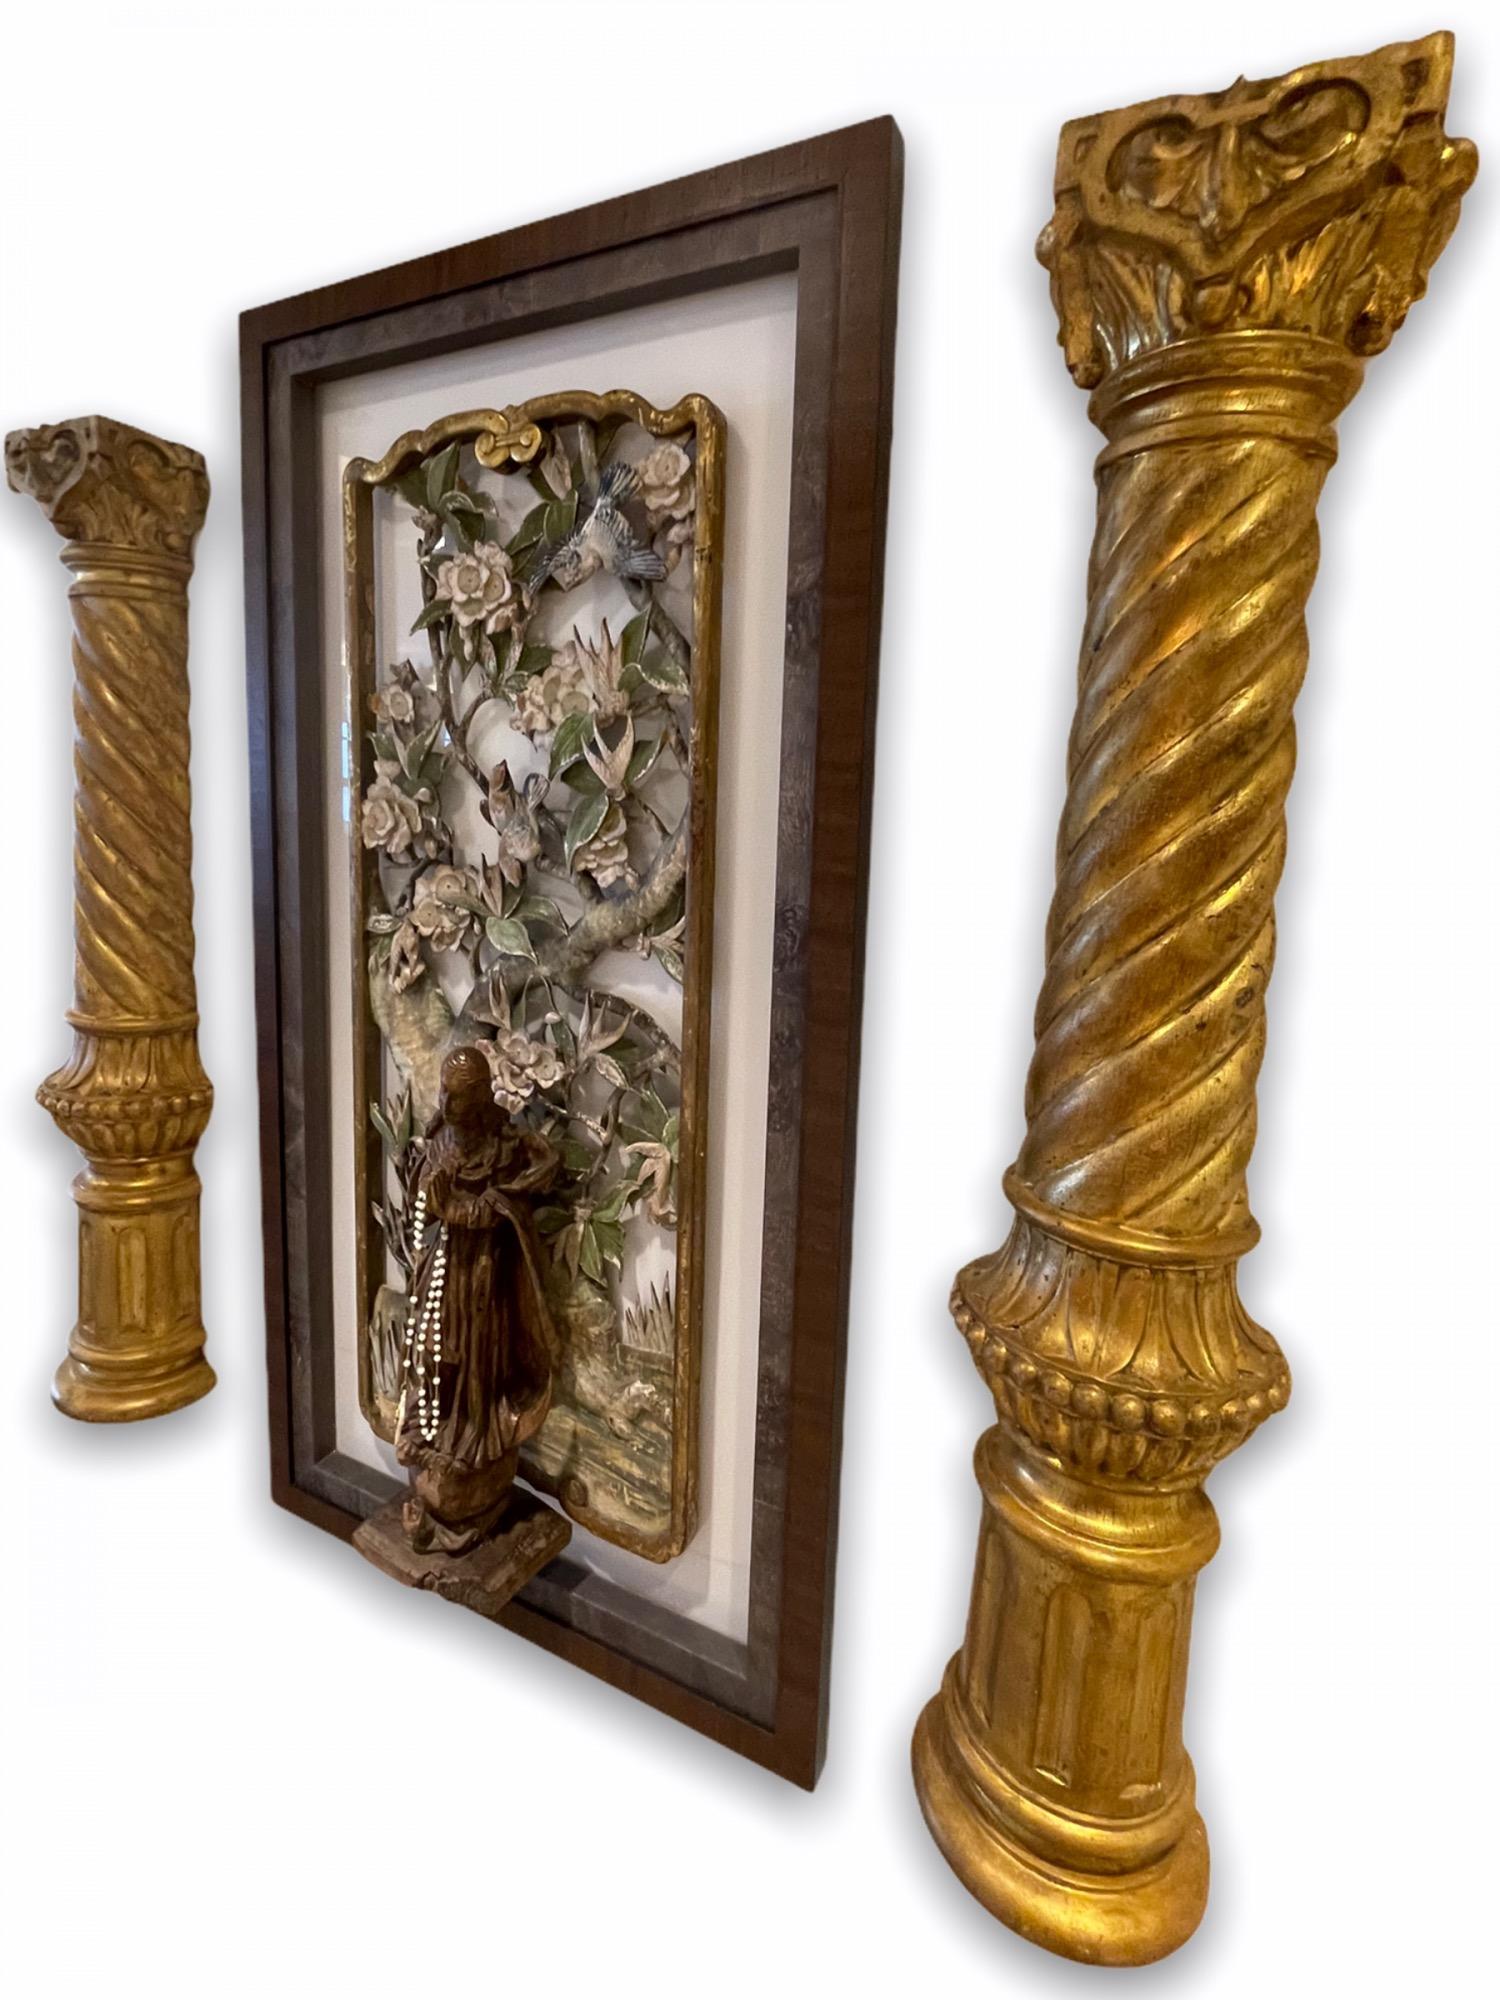 Ein aus mehreren Einzelelementen zusammengesetztes Gebilde. 

Ein Paar von frühen 19. Jahrhundert von Gold vergoldet geschnitztem Holz russischen Säulen. 

18. Jahrhundert geschnitztes, bemaltes und vergoldetes japanisches Paneel. 

Ende des